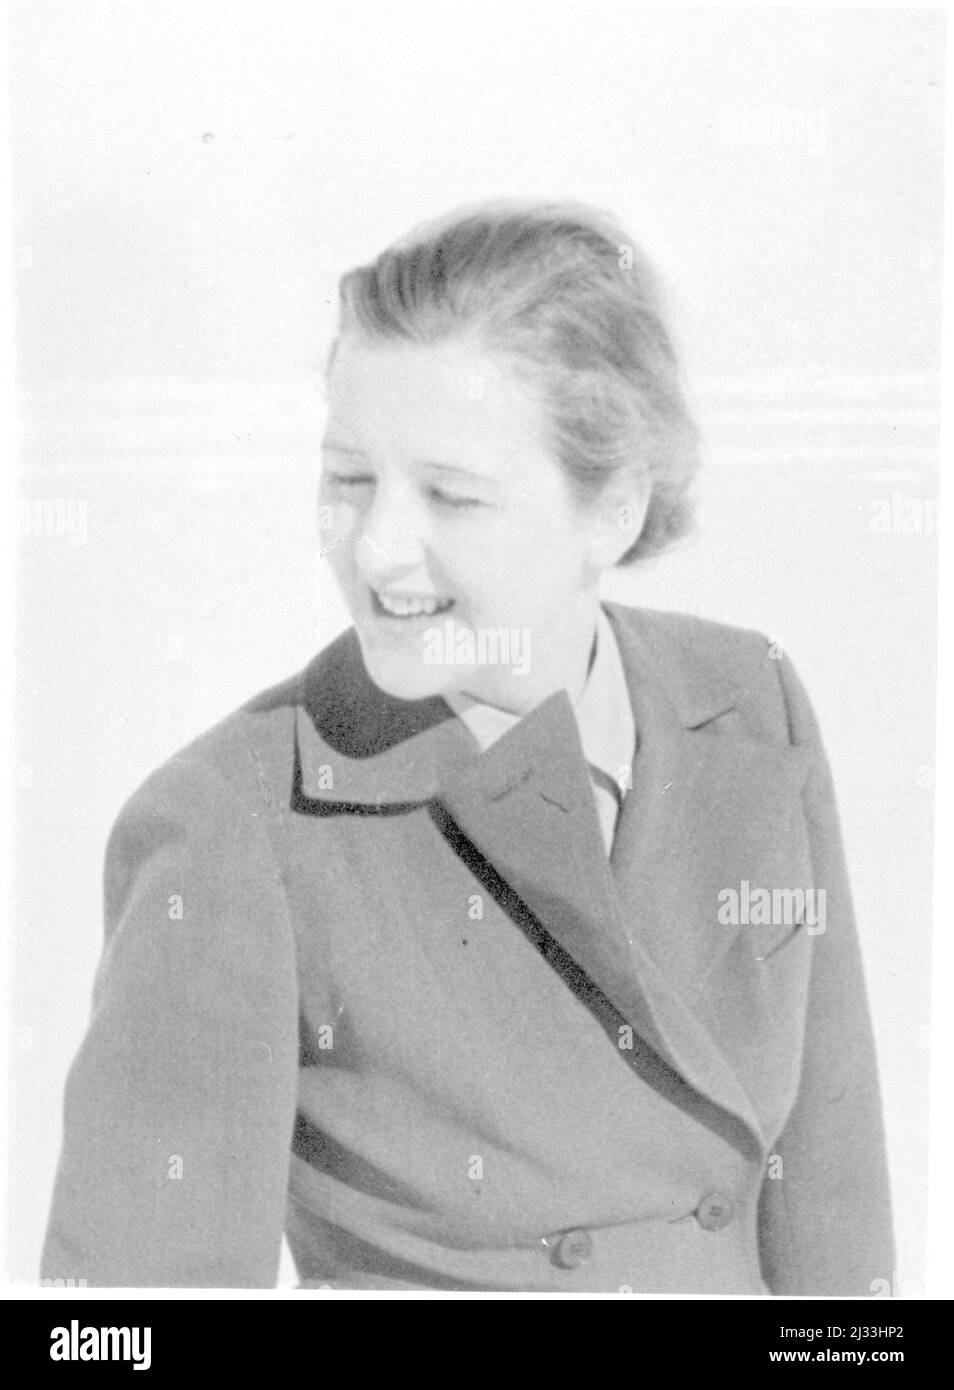 Eva Brauns Fotoalben, ca. 1913 - ca. 1944. Diese Alben werden Eva Braun zugeschrieben (vier werden von ihrer Freundin Herta Schneider, geb. Ostermeyer, beansprucht) und dokumentieren ihr Leben aus ca. 1913 bis 1944. Es gibt viele Fotos von Eva, ihren Schwestern und ihren Kindern, Herta Schneider und ihren Kindern, sowie Fotos von Evas Ferien, Familienmitgliedern und Freunden. Dazu gehören Fotografien von und von Eva Braun im Hitlerhaus Berghof (oder Kehlstein), Fotografien von Hitler und seinem Gefolge, Besucher von Berghof und der Landschaft um Berchtesgaden sowie einige Studioporträts von Eva Stockfoto